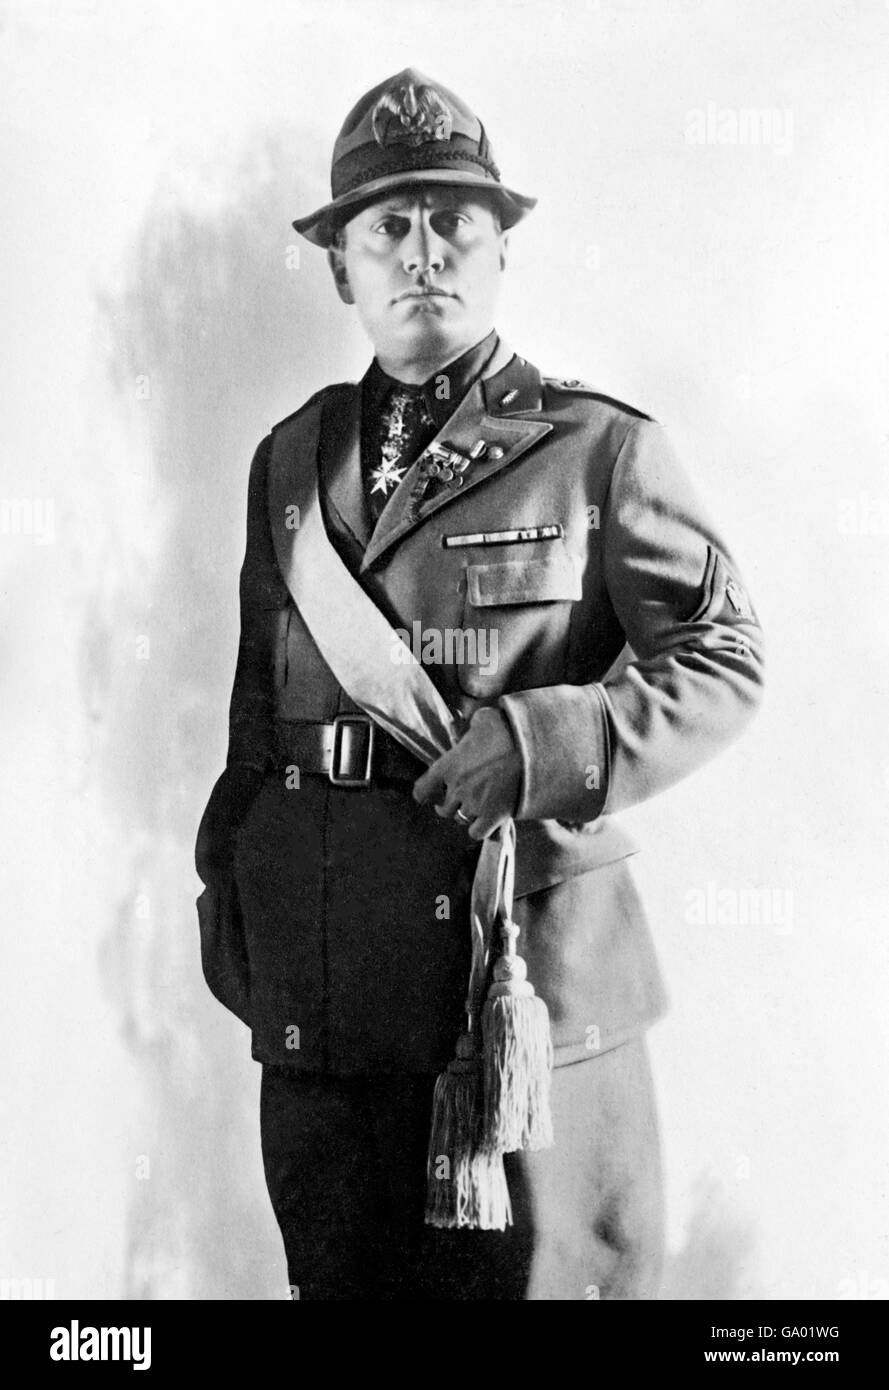 Mussolini. Ritratto di Benito Amilcare Andrea Mussolini (1883-1945), l'Italiano dittatore fascista, in uniforme. Foto da Bain News Service, c.1924 Foto Stock